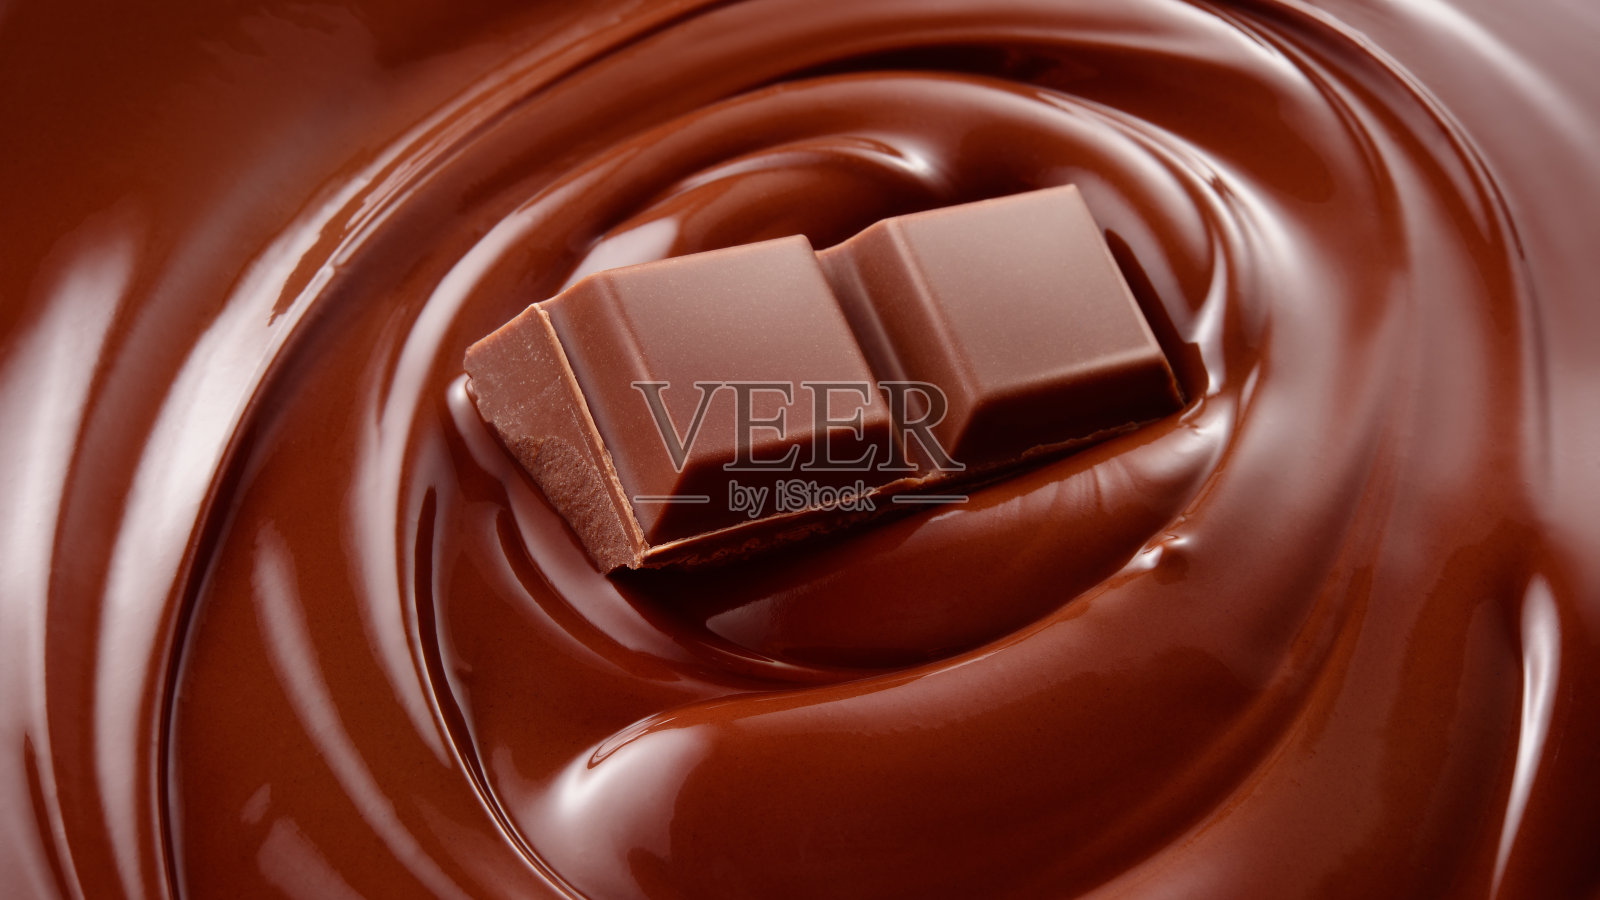 融化的巧克力背景/融化的巧克力/巧克力背景/巧克力棒照片摄影图片